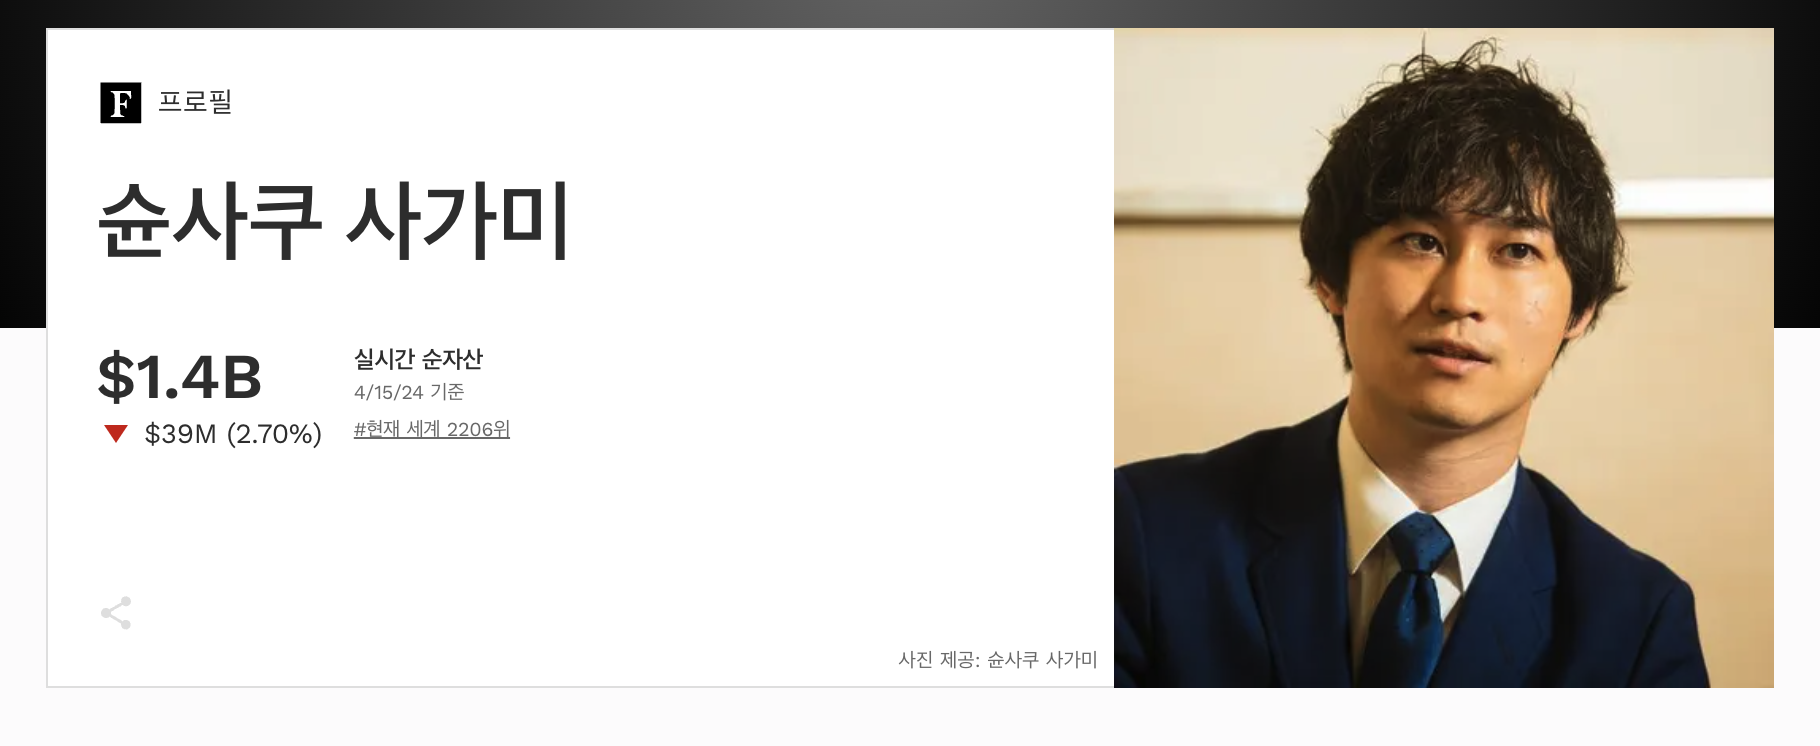 M&A 총합연구소 CEO 사가미 슌사쿠, 자산 1조 이상 (출처: Forbes)